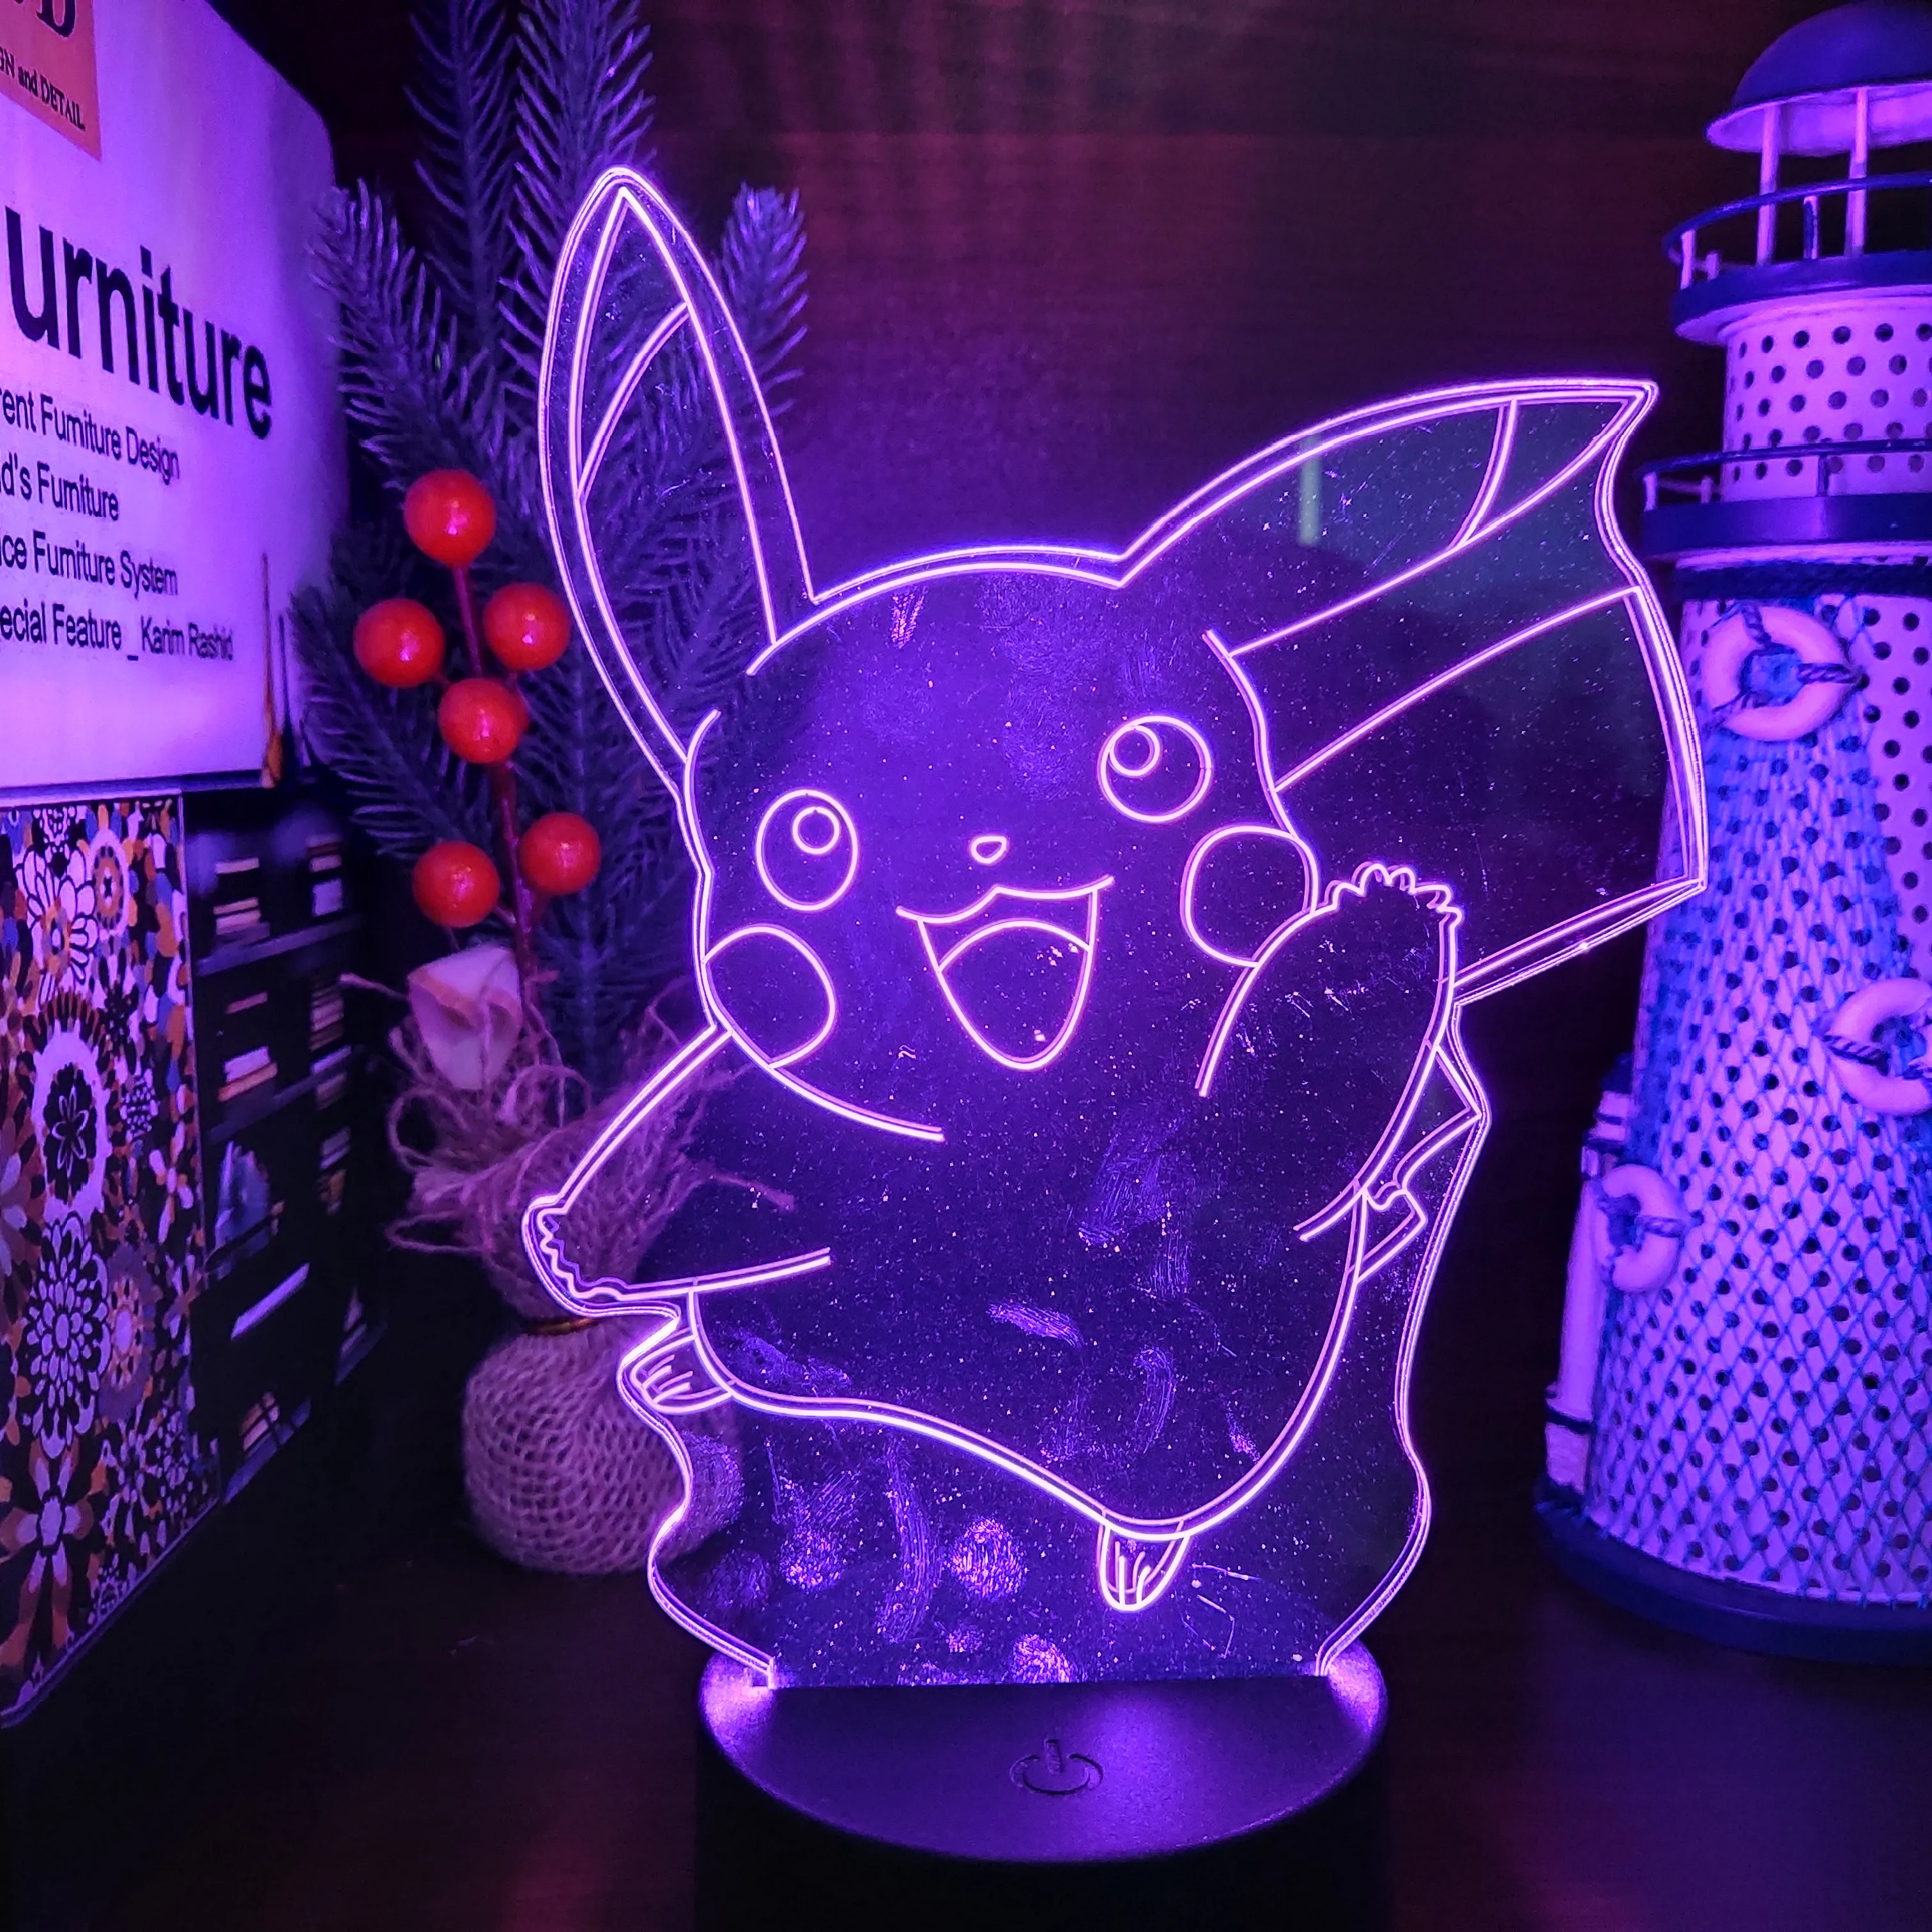 kontoførende operatør træt af Pokemon 3d Lamp Night Lamps | Night Light Pokemon Pikachu | Pikachu 3d Led  Night Light - Night Lights - Aliexpress